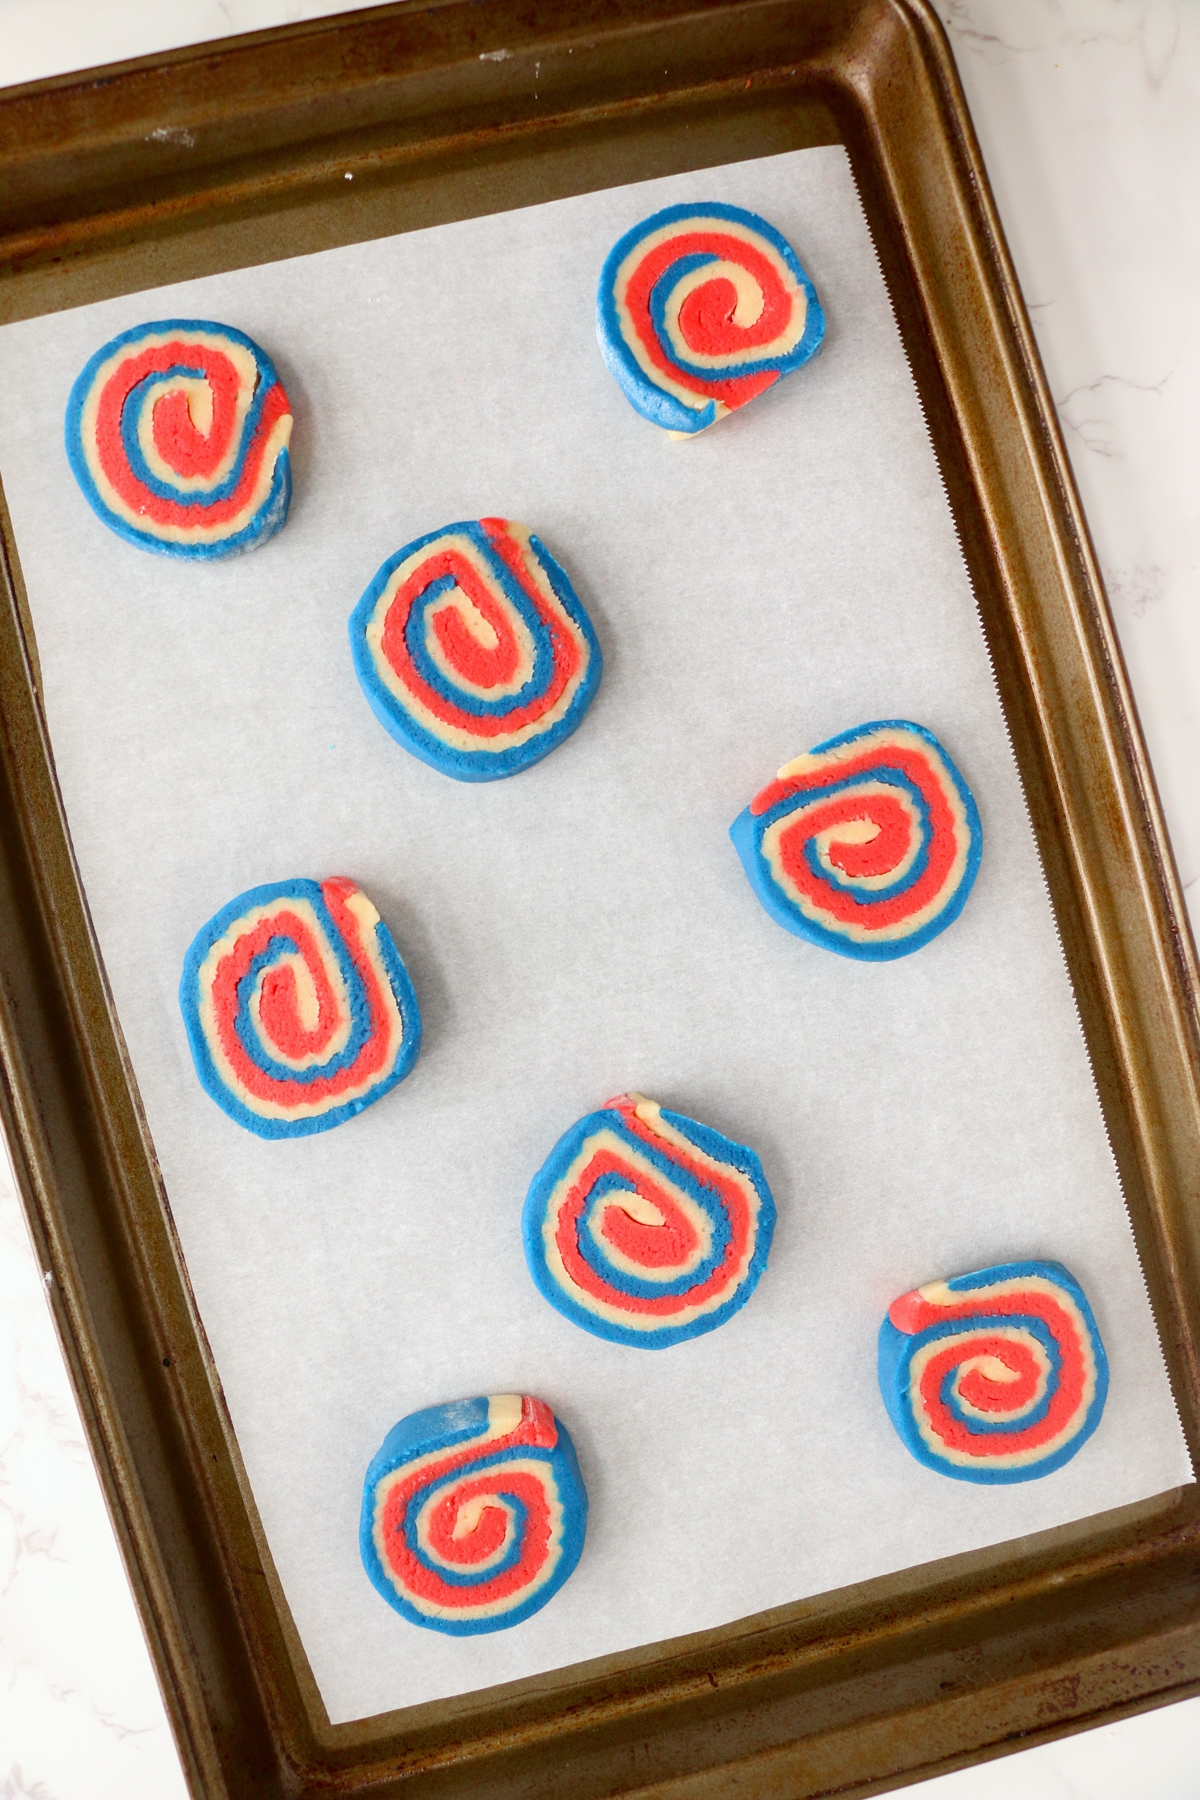 4th of July pinwheel cookies on a baking sheet